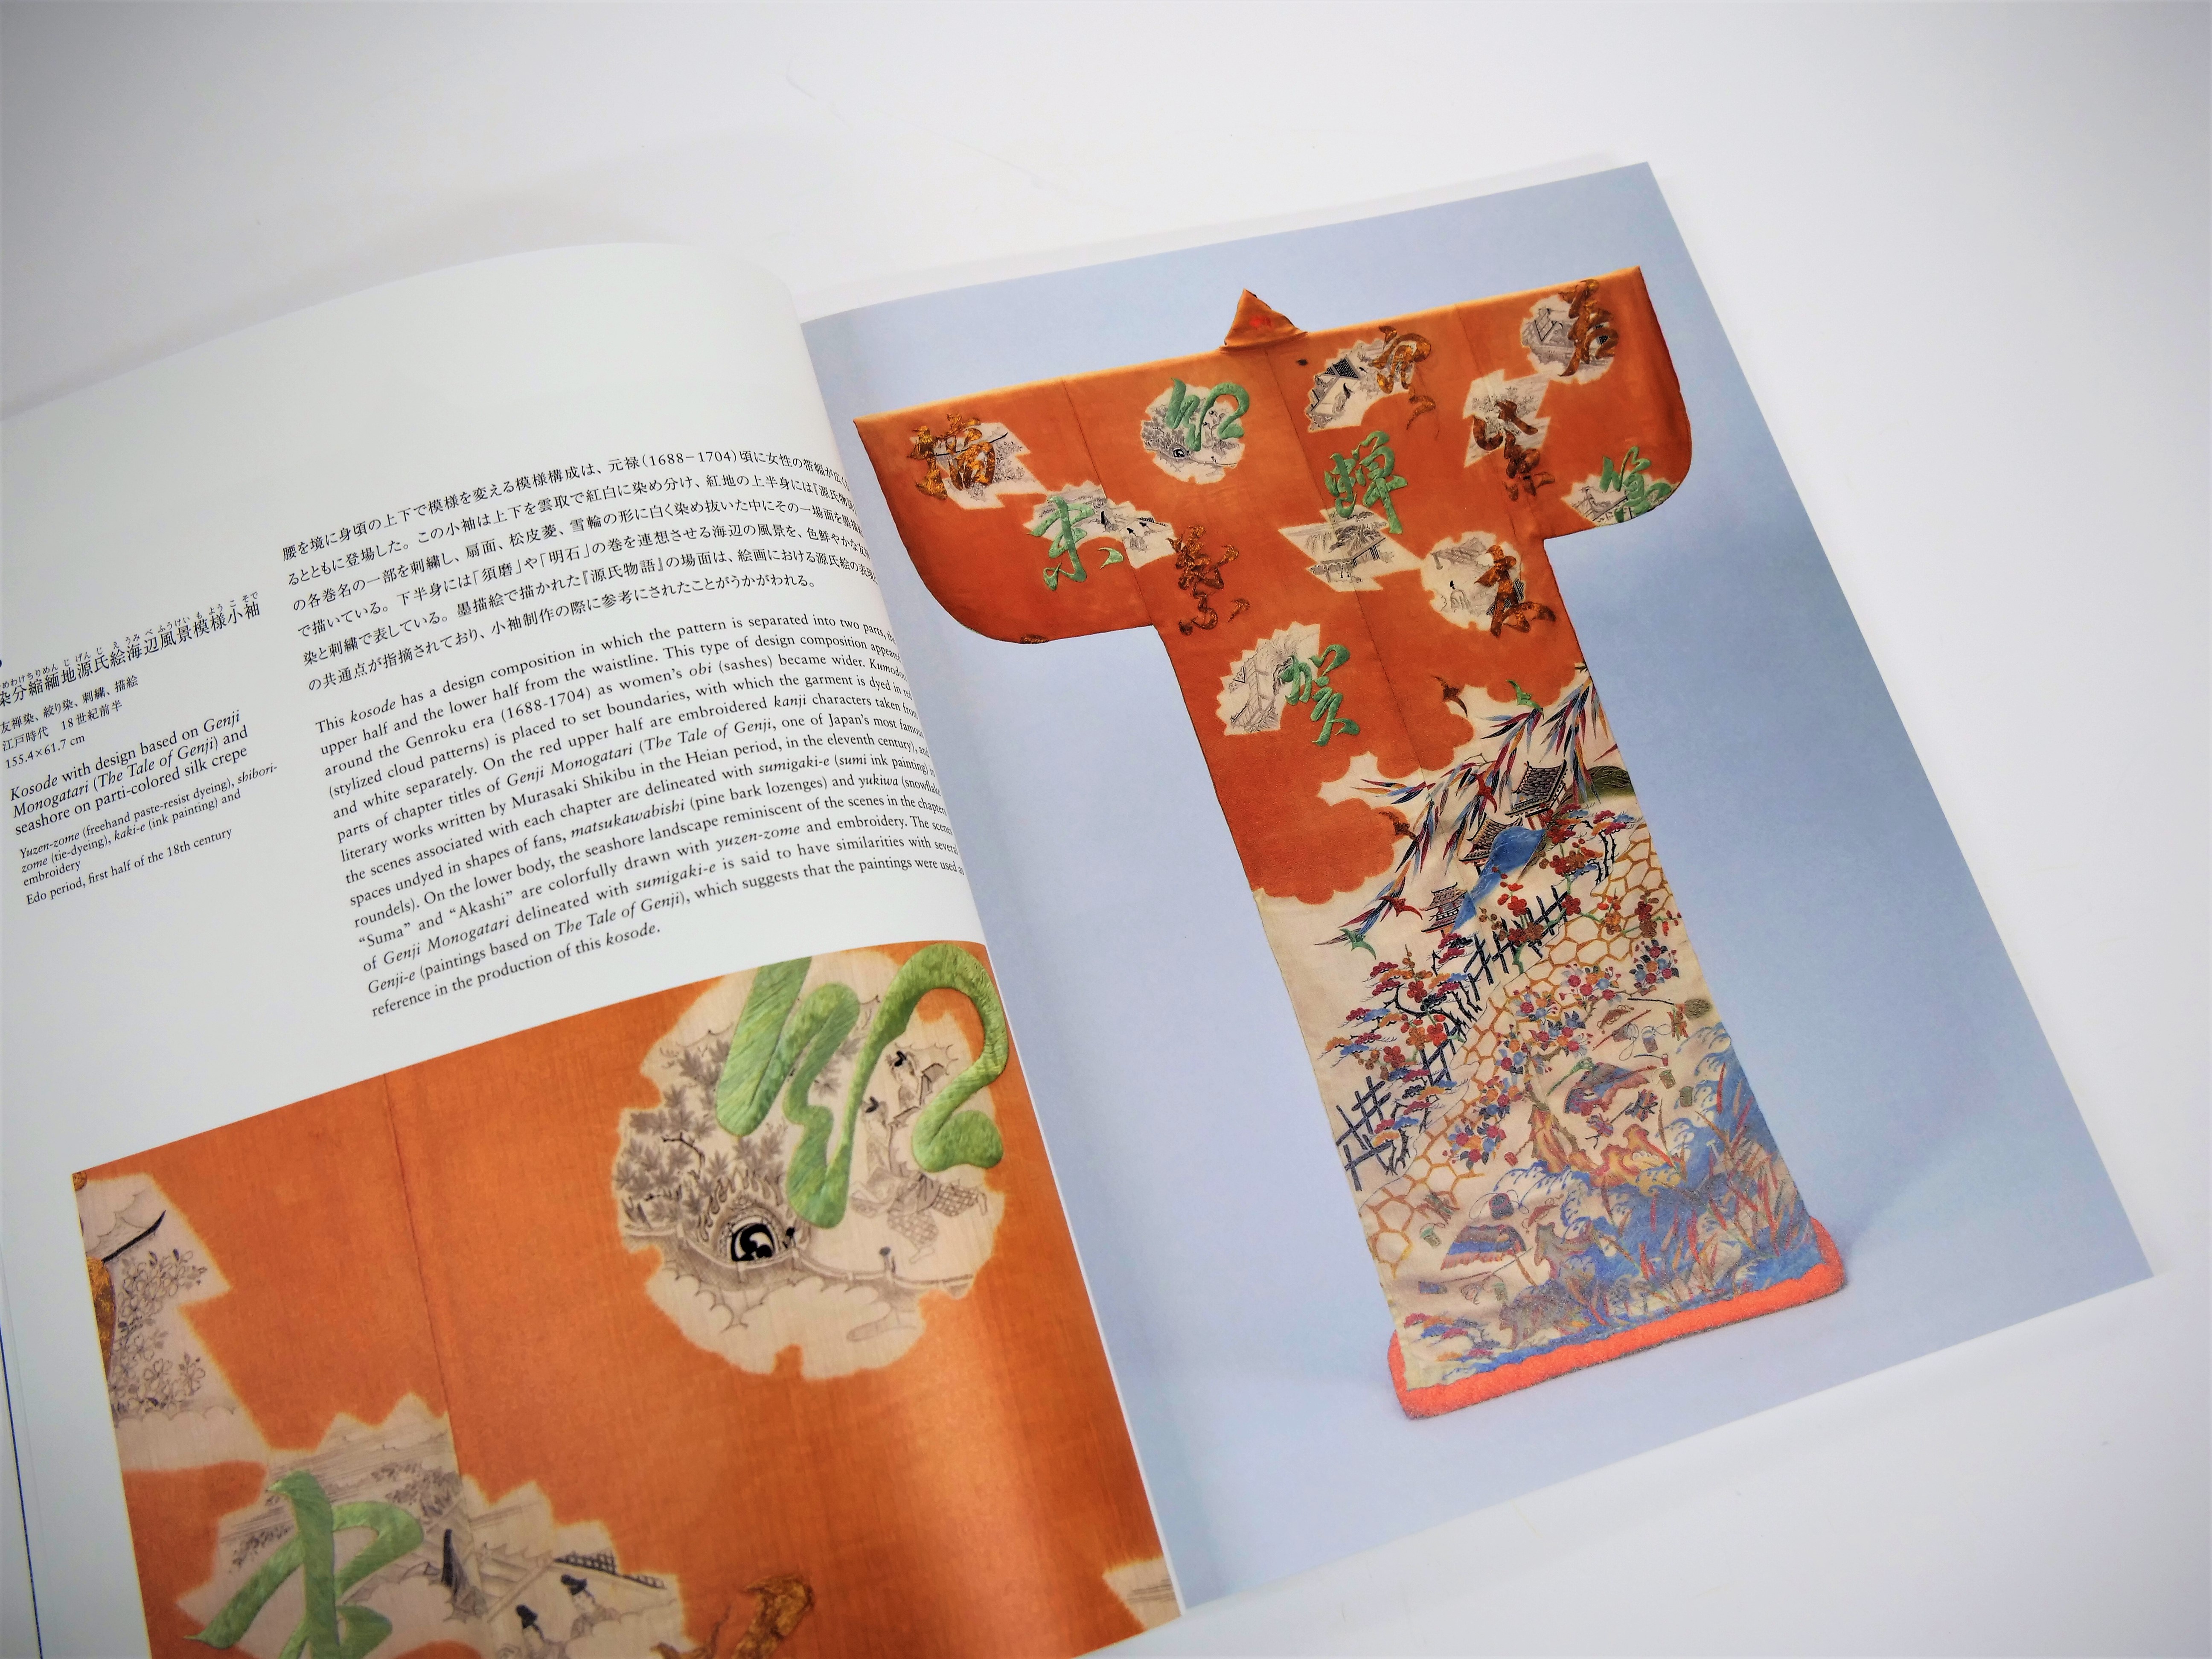 壮観の丸紅「きもの」コレクションを堪能できる図録 - 東京印書館 